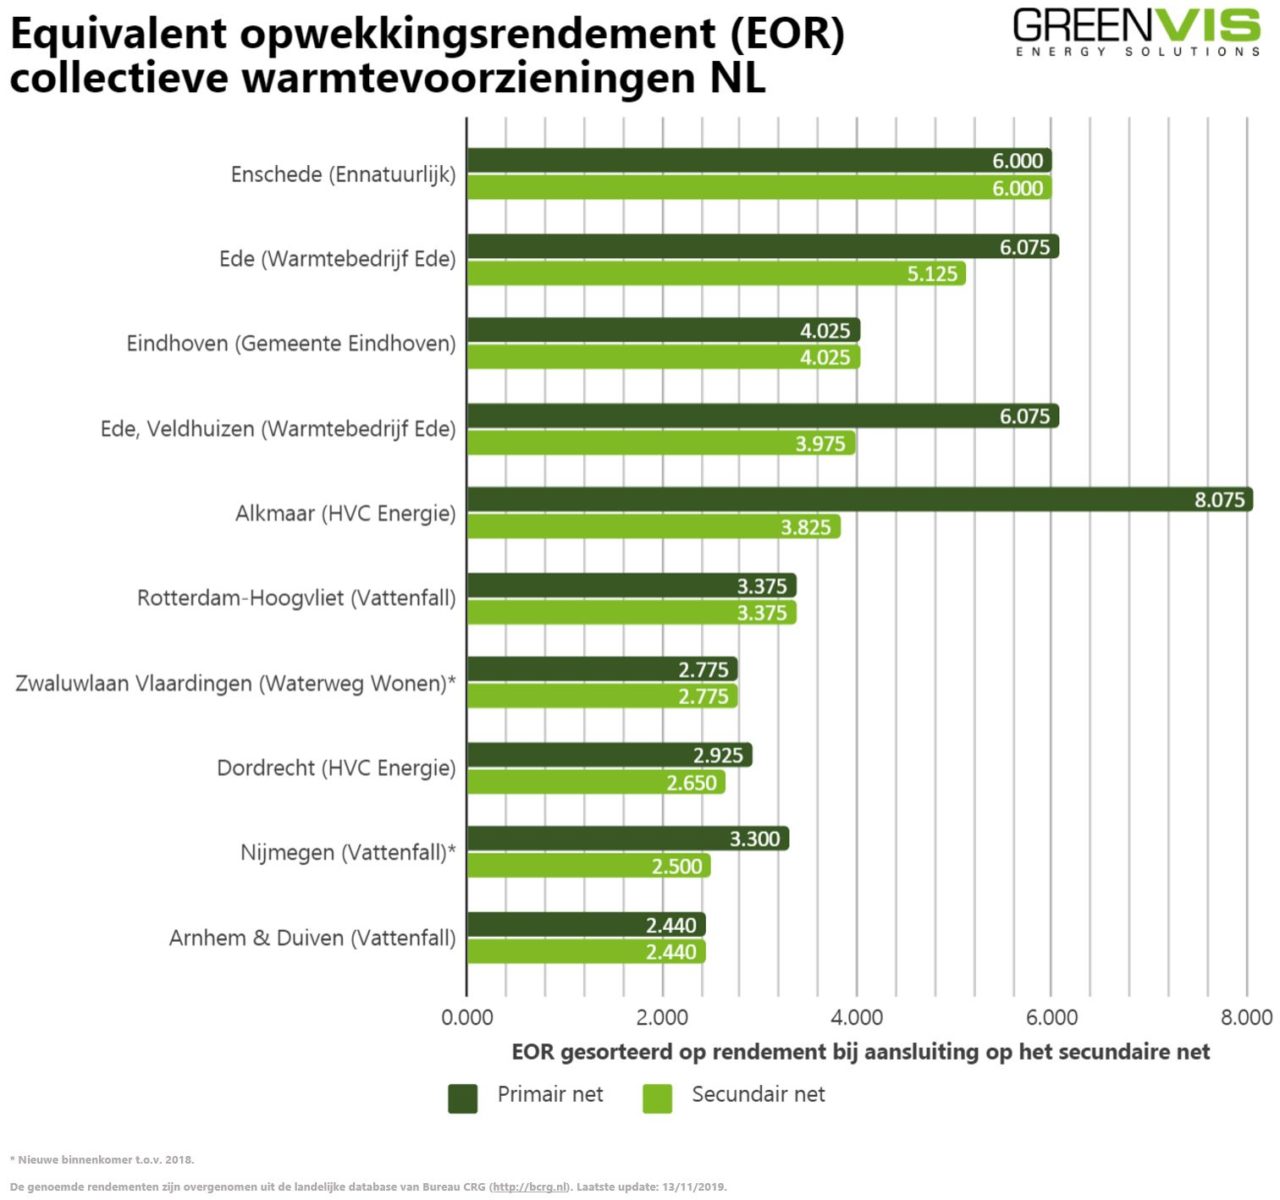 Verdikken Succesvol Fonetiek Top 10 duurzaamste warmtenetten van 2019 bekend - Greenvis.nl